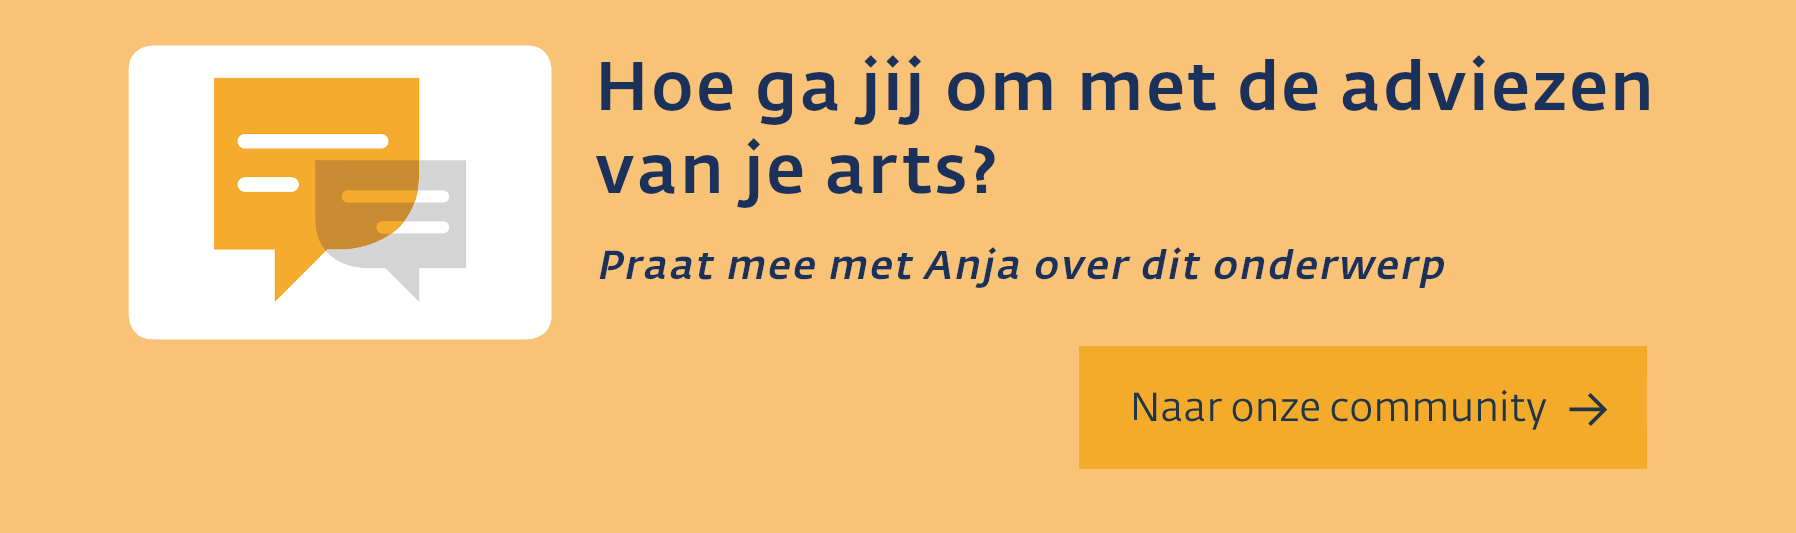 Praat mee met Anja in de community